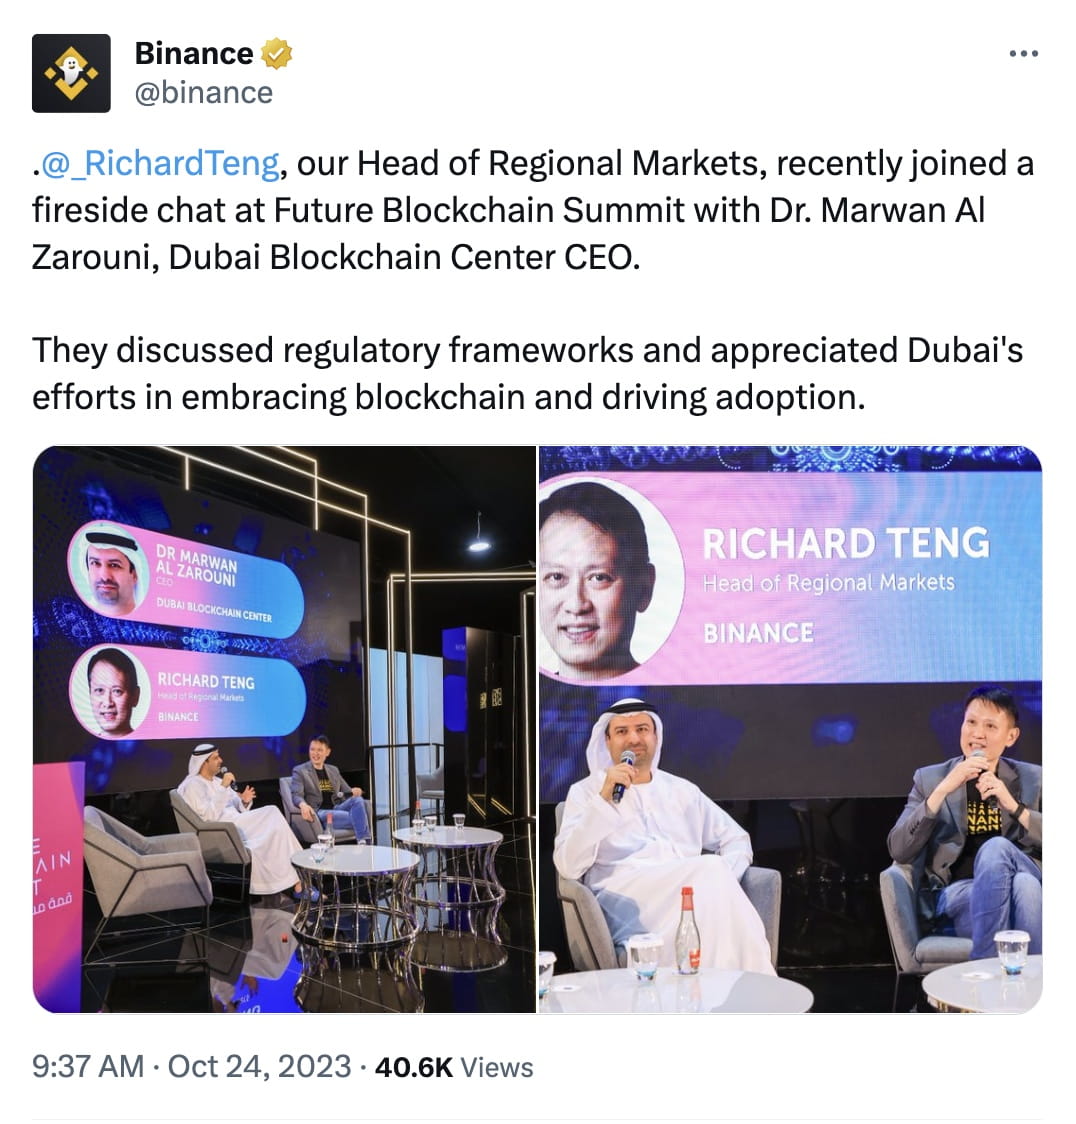 Giám đốc khu vực thị trường của Binance tham gia đối thoại về blockchain tại Future Blockchain Summit